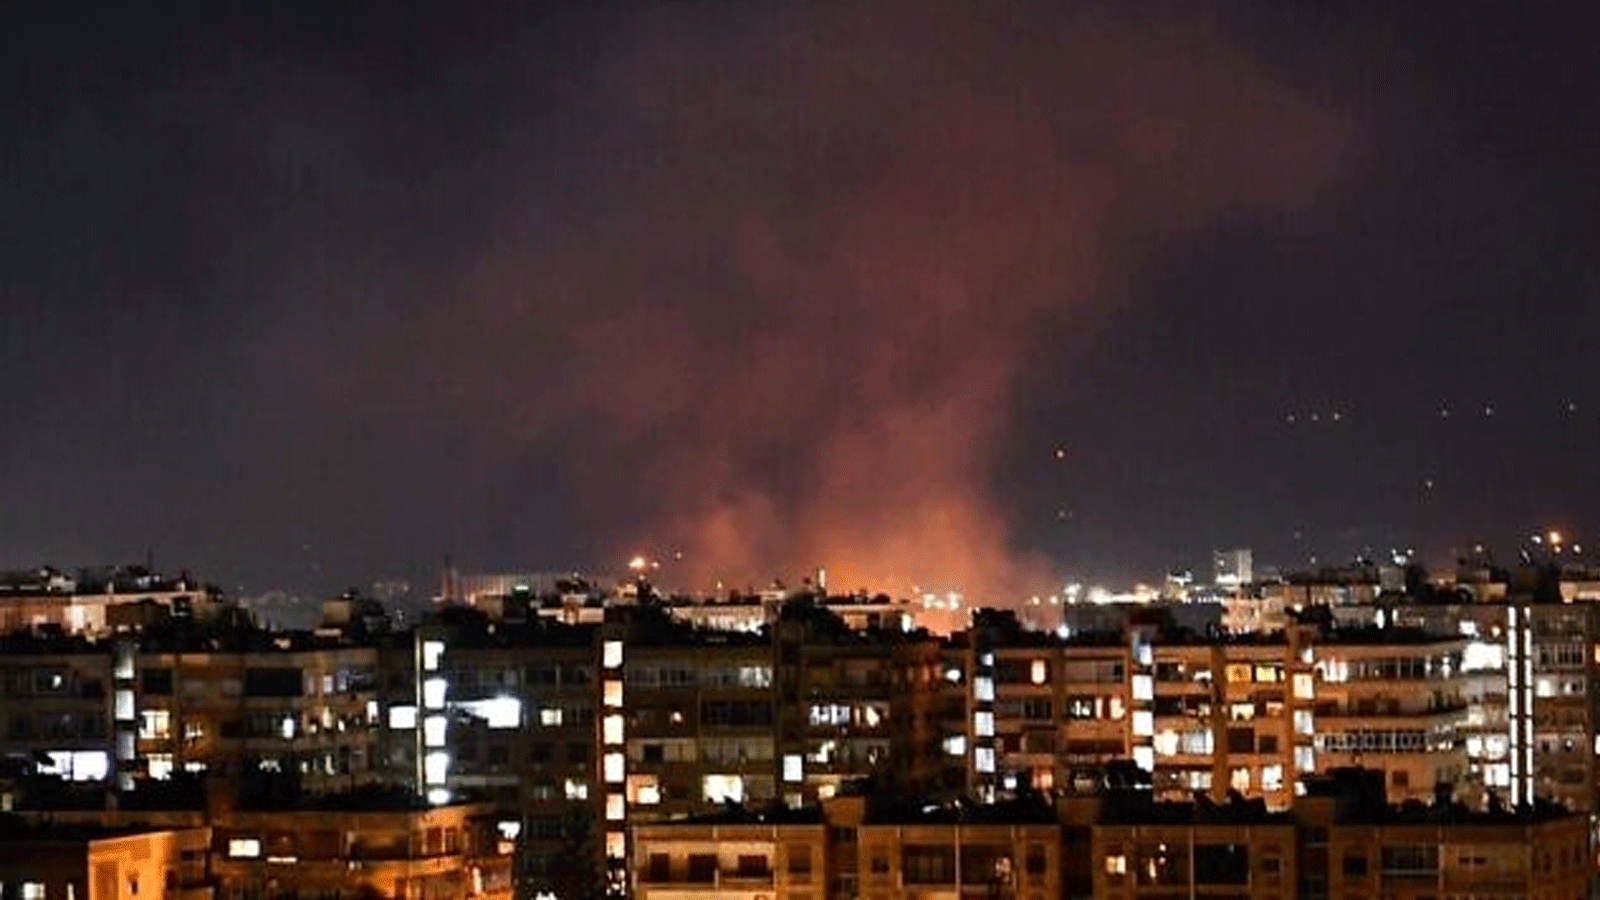 صورة توضيحية لدخان يتصاعد في اعقاب غارة جوية اسرائيلية مزعومة استهدفت جنوب دمشق، سوريا 20 تموز\يوليو 2020